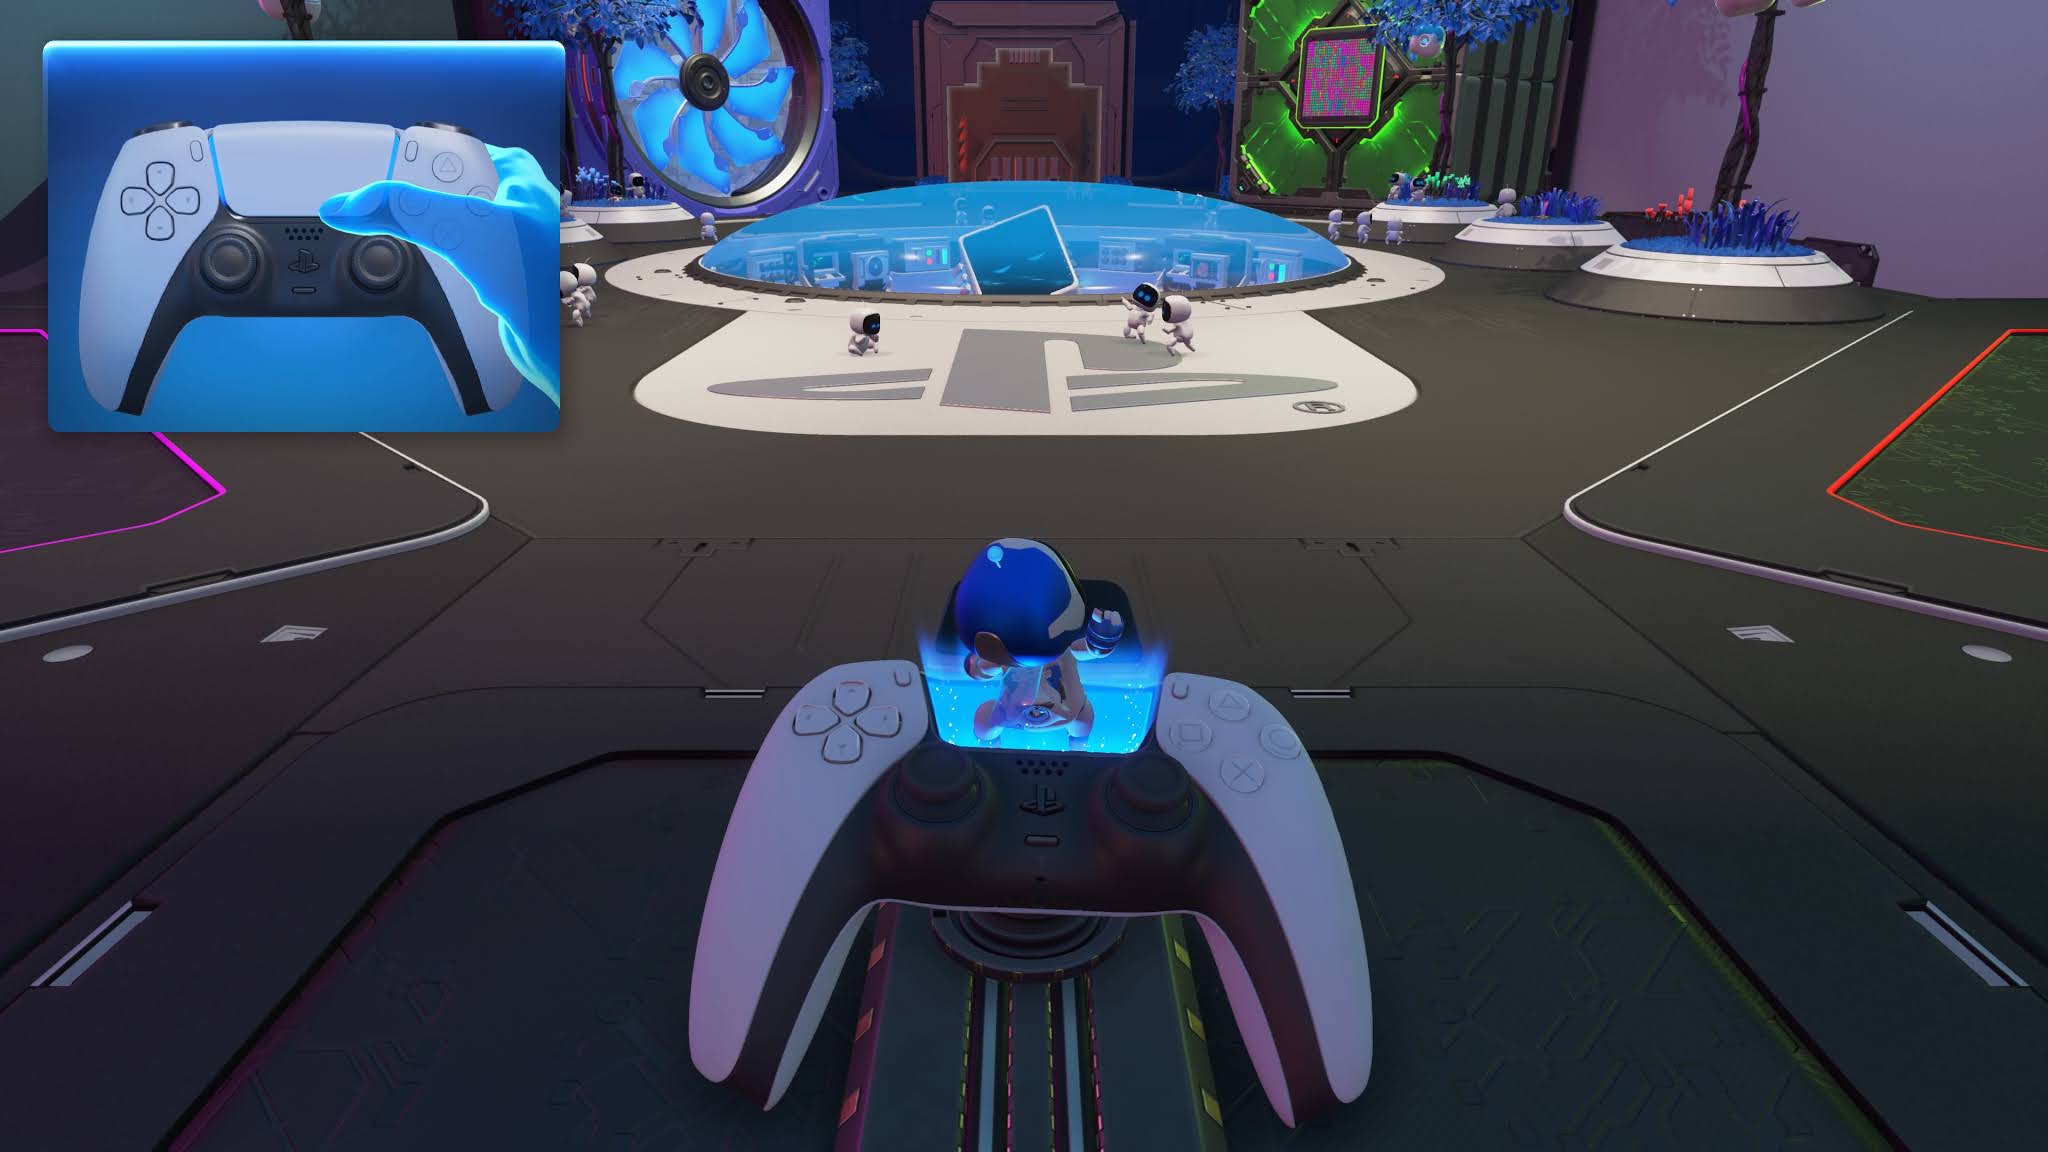 Análise: Astro's Playroom (PS5) é uma cativante e surpreendente jornada  pela trajetória do PlayStation - GameBlast